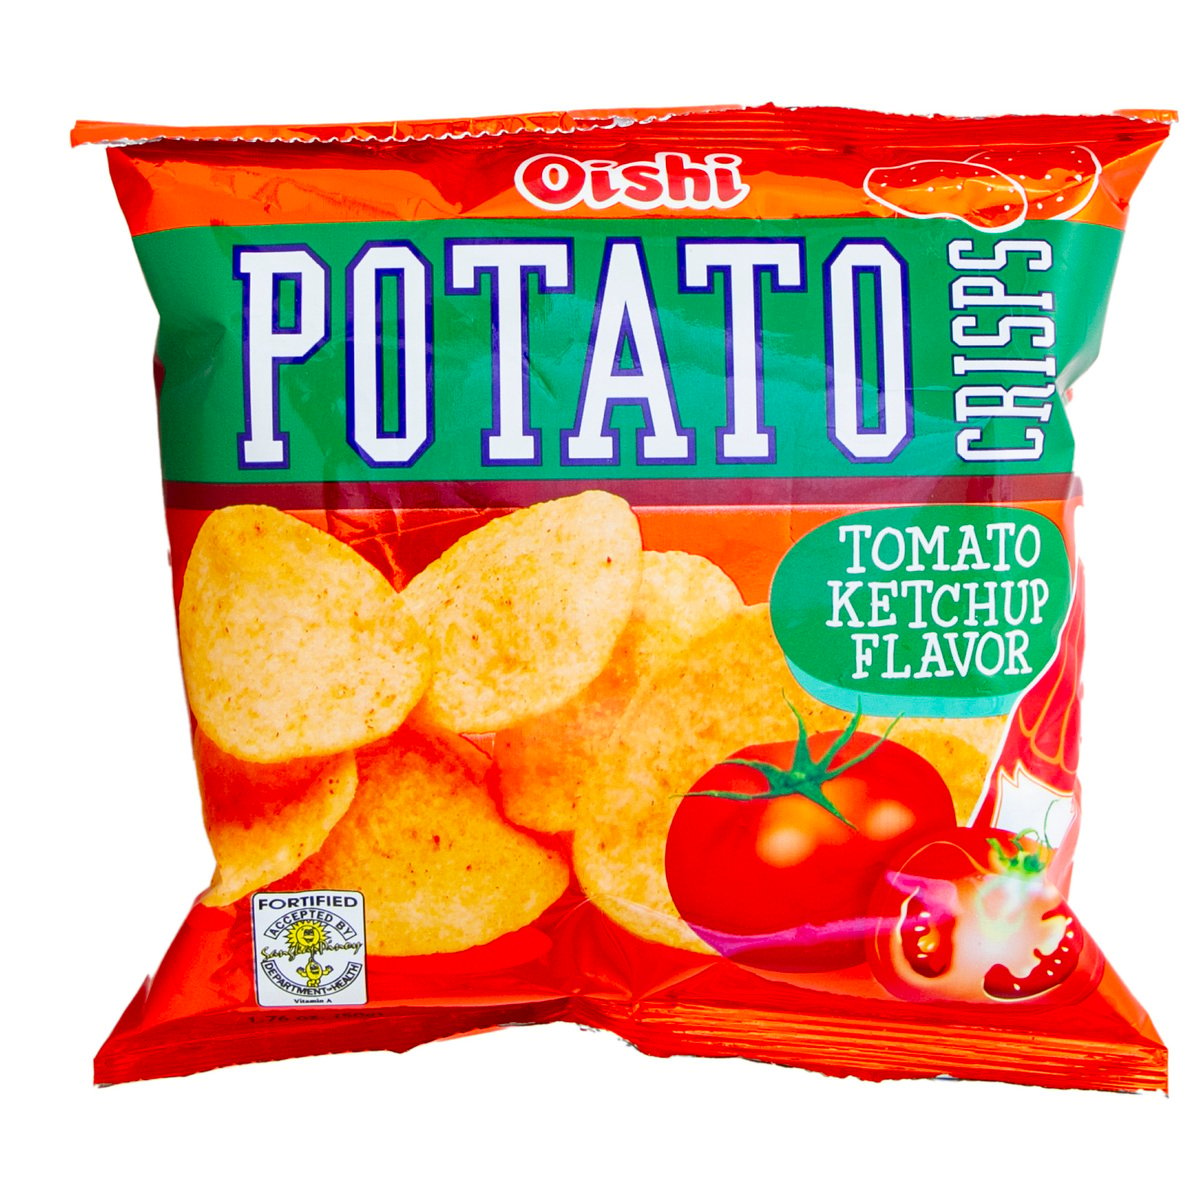 Oishi Potato Crisps Tomato Ketchup Flavor 50 g